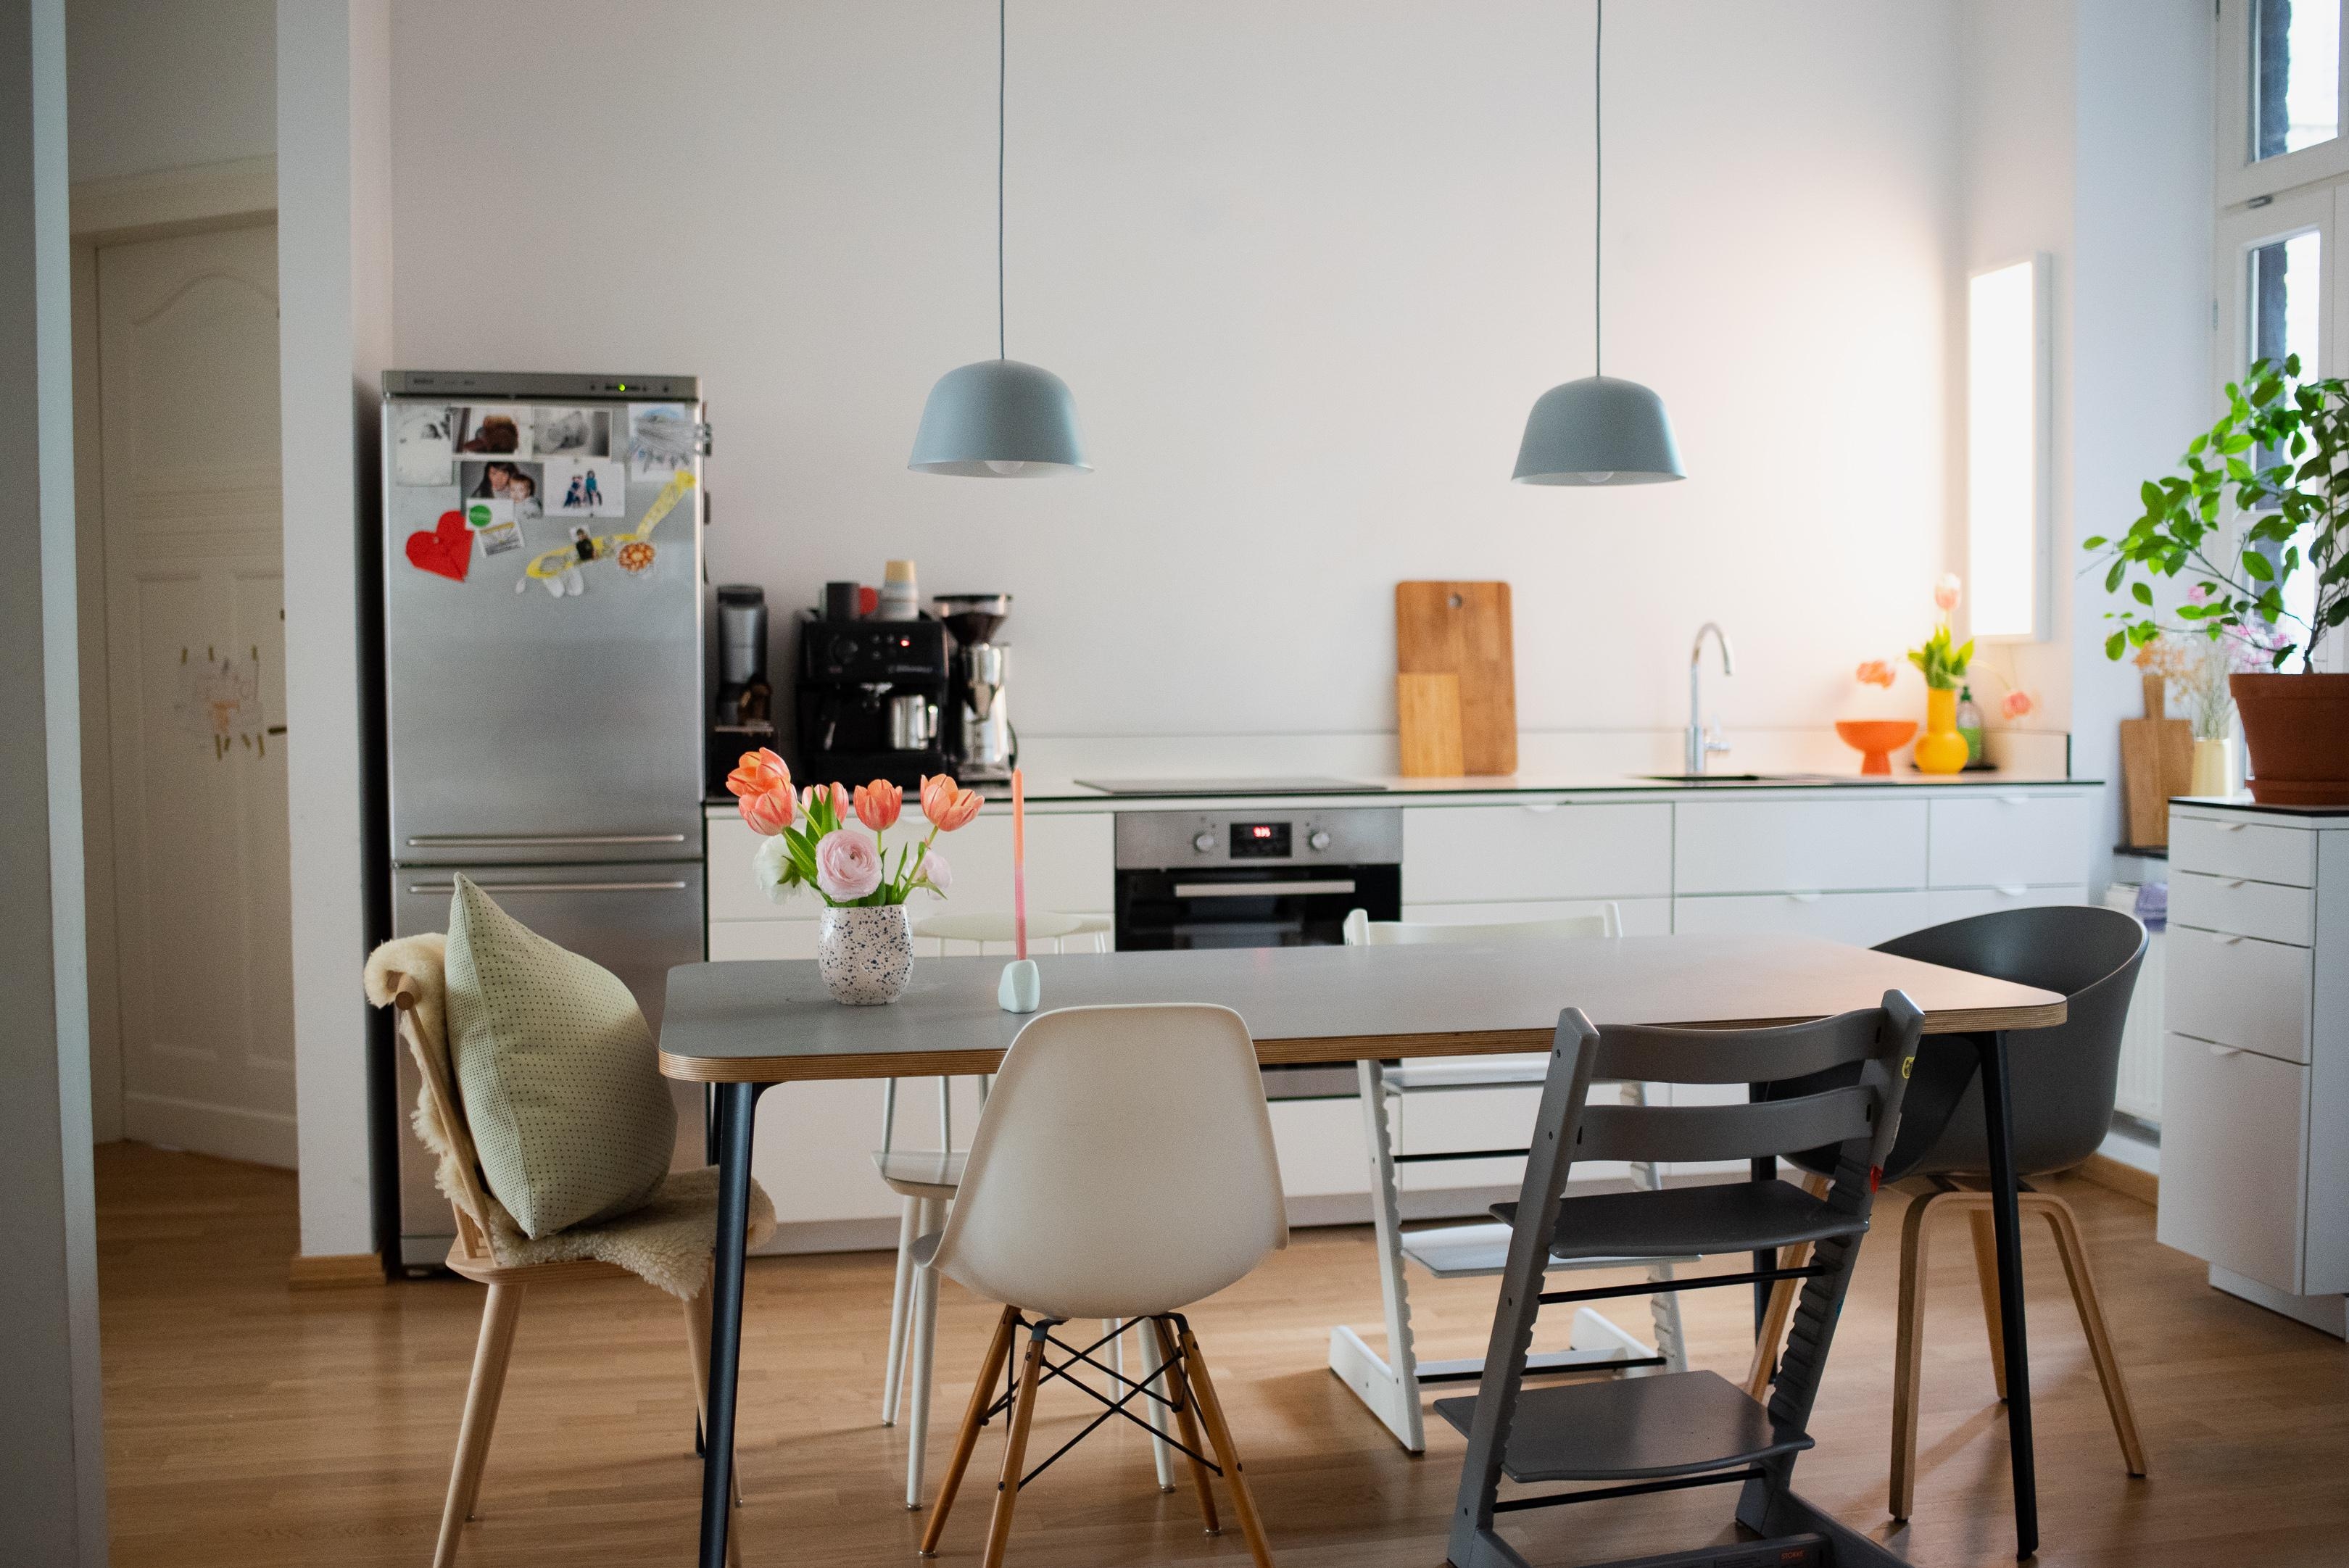 Guten Morgen #kitcheninspiration #wohnküche #küche #kitchenstyle #interiordesign